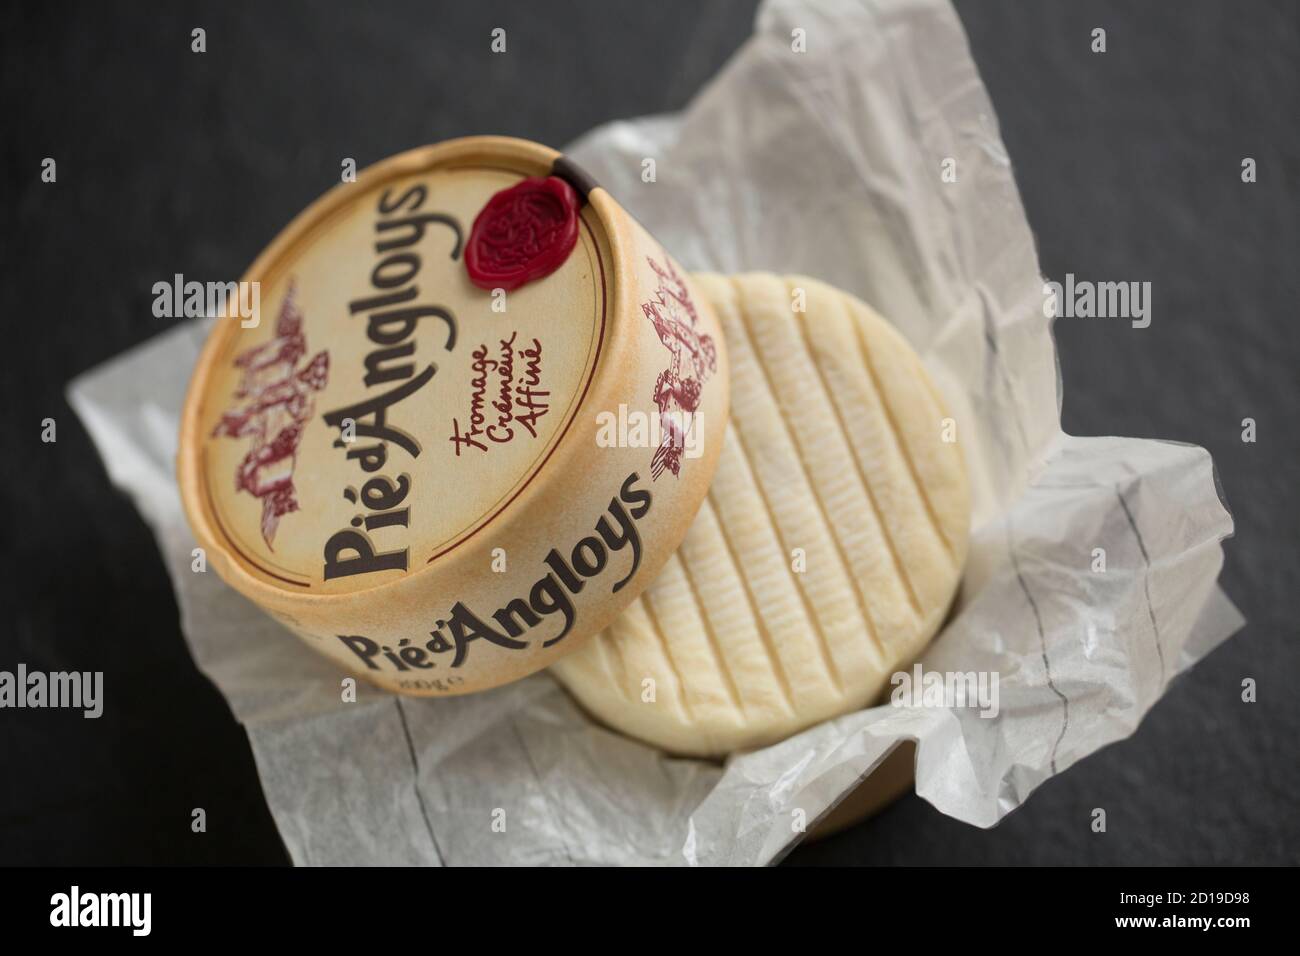 Un esempio del formaggio francese pieno di grasso morbido Pie d’Angloys fatto con latte di mucca pastorizzato. Acquistato da un supermercato Waitrose nel Regno Unito. Dorset Eng Foto Stock